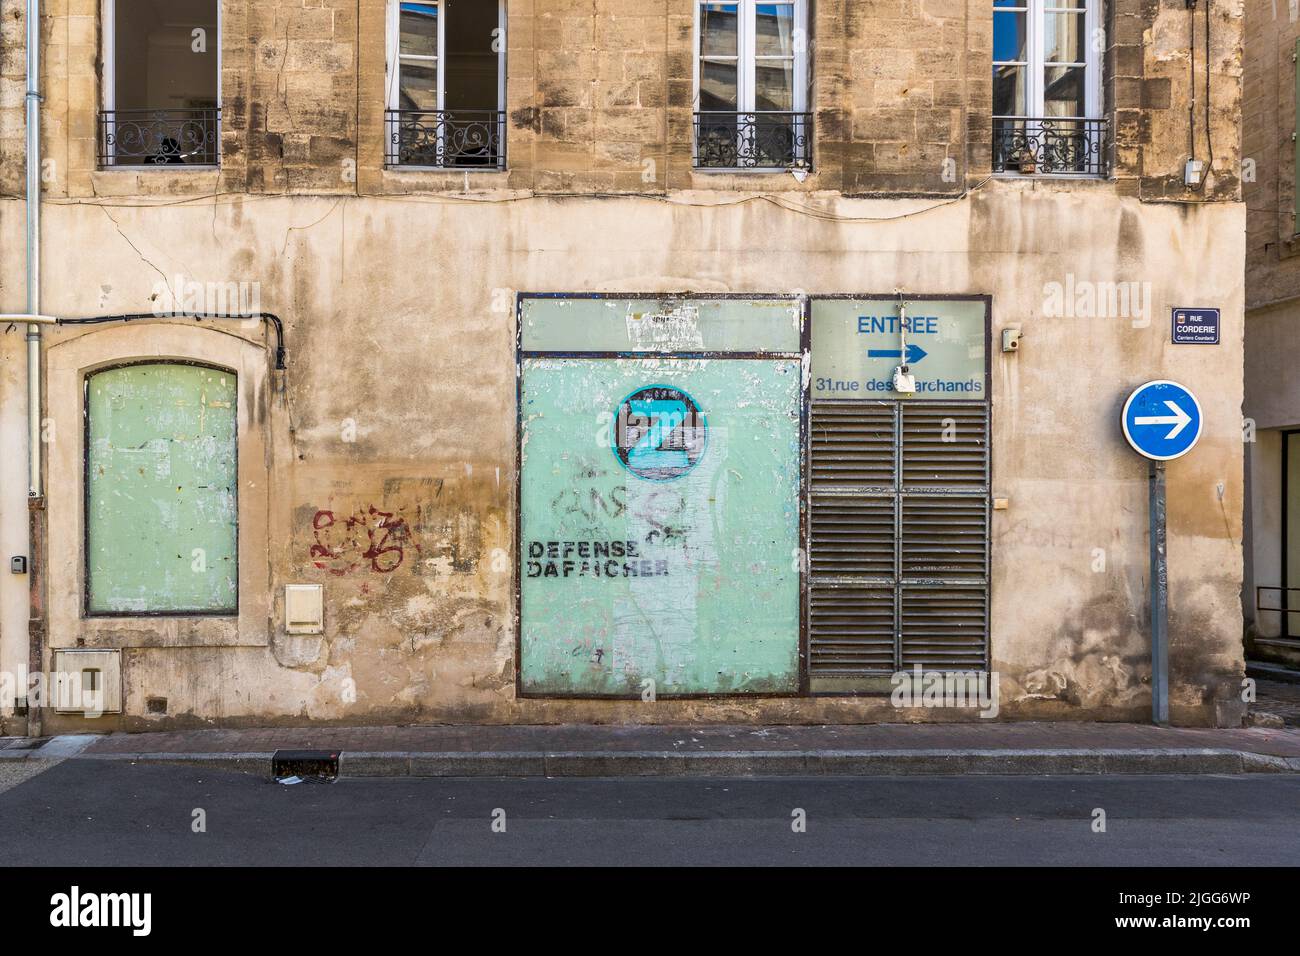 Tienda en ruinas en la que se pueden ver los personajes franceses 'efense d'aficher' en Aviñón, Francia Foto de stock